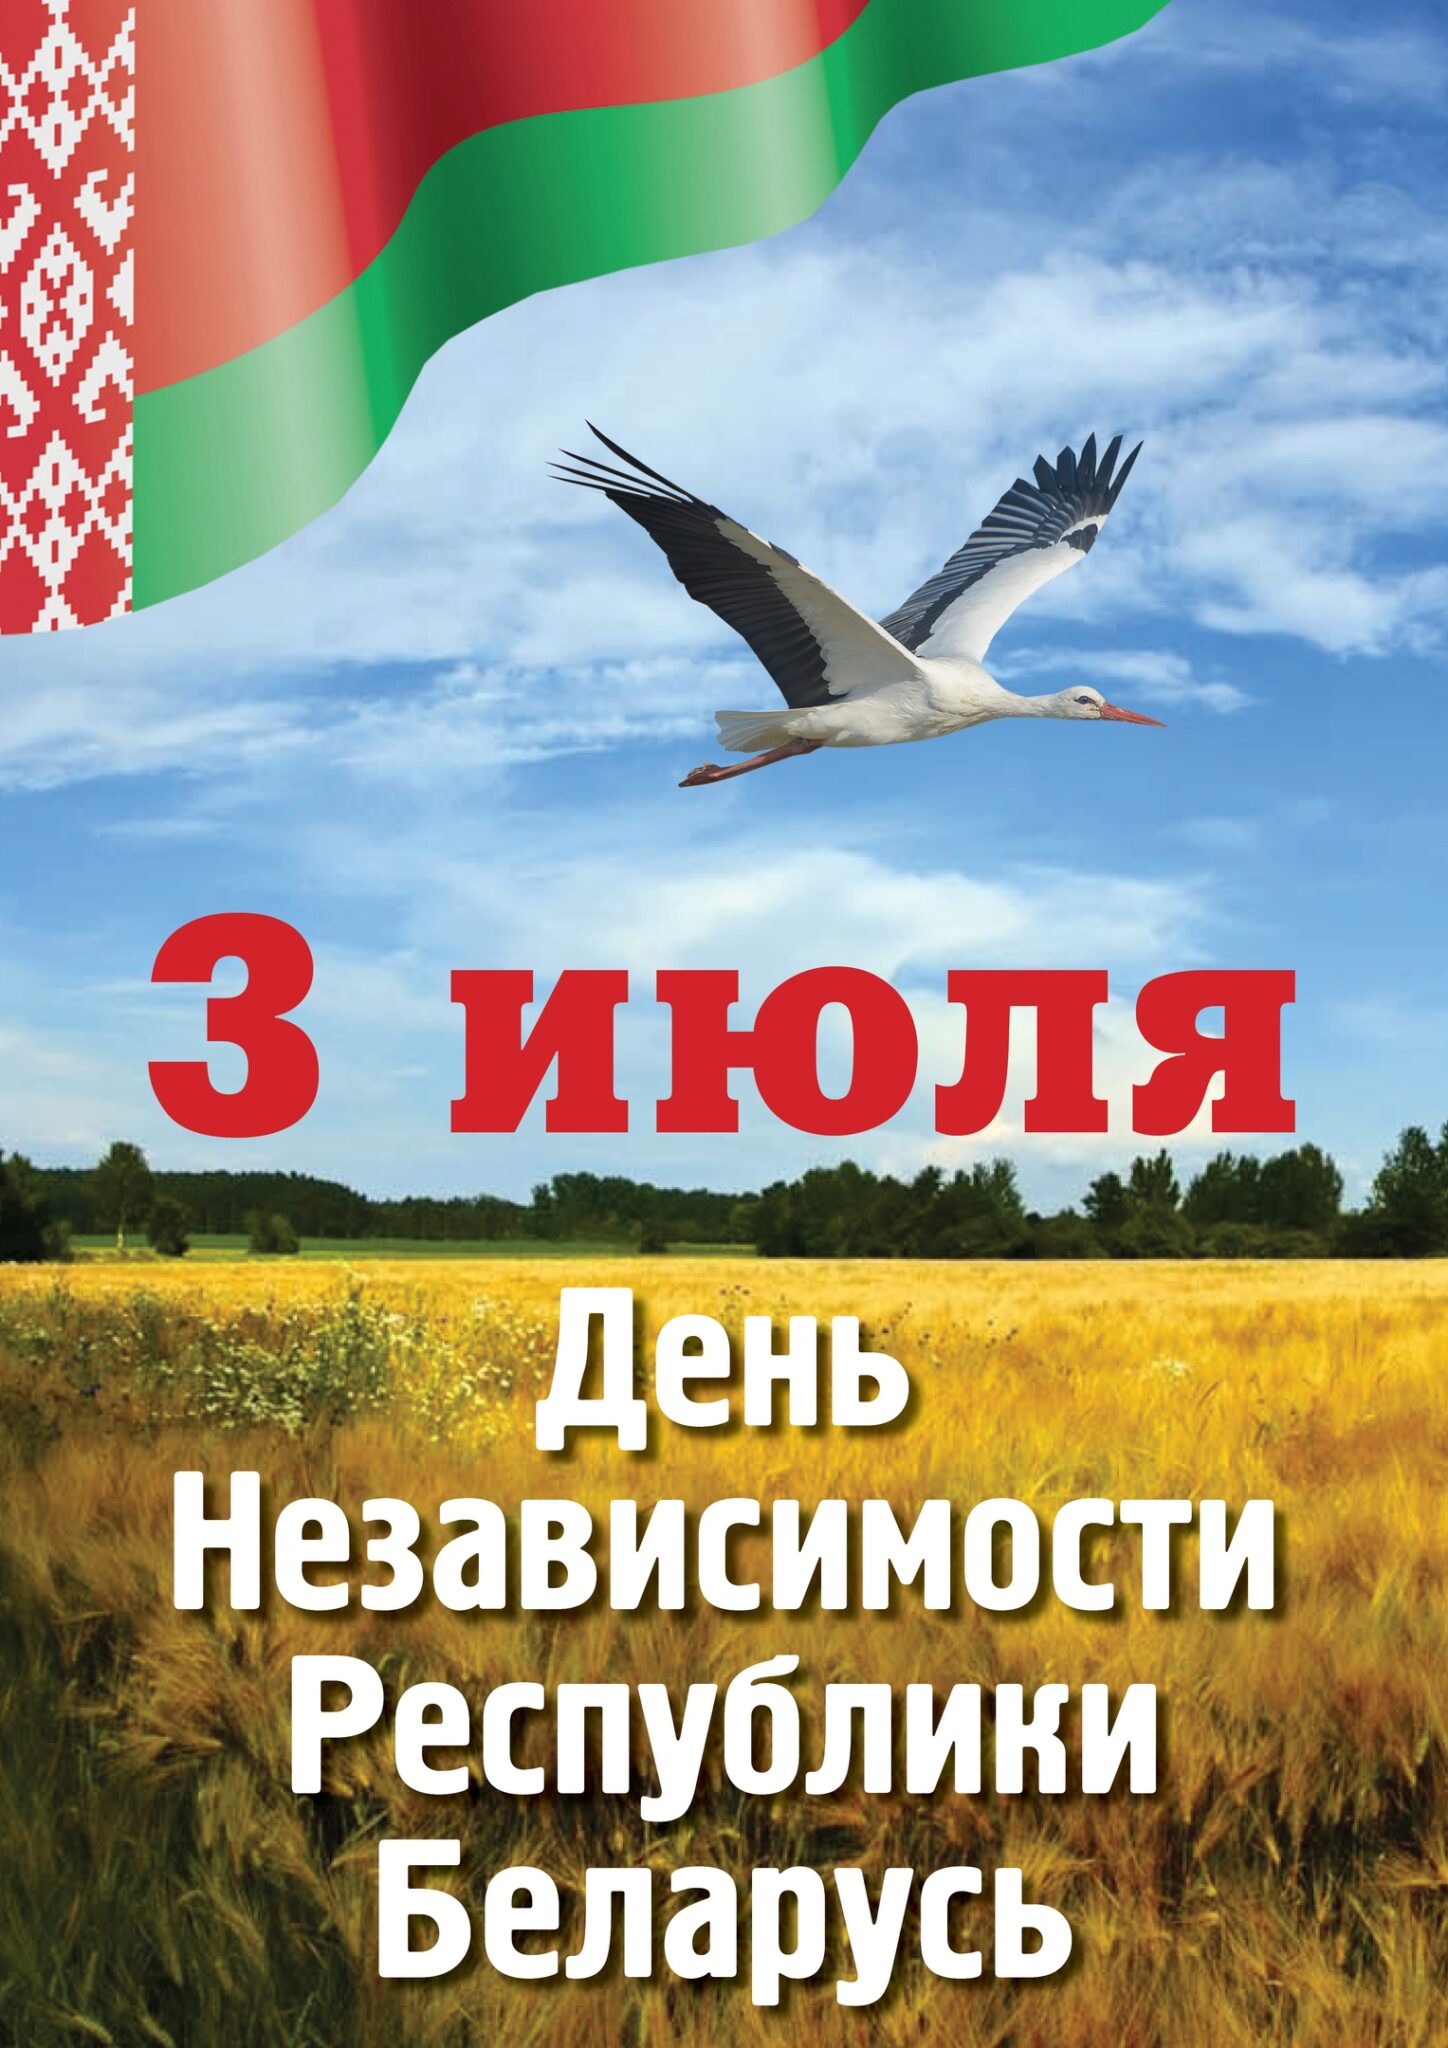 3 июля – День Независимости Республики Беларусь 